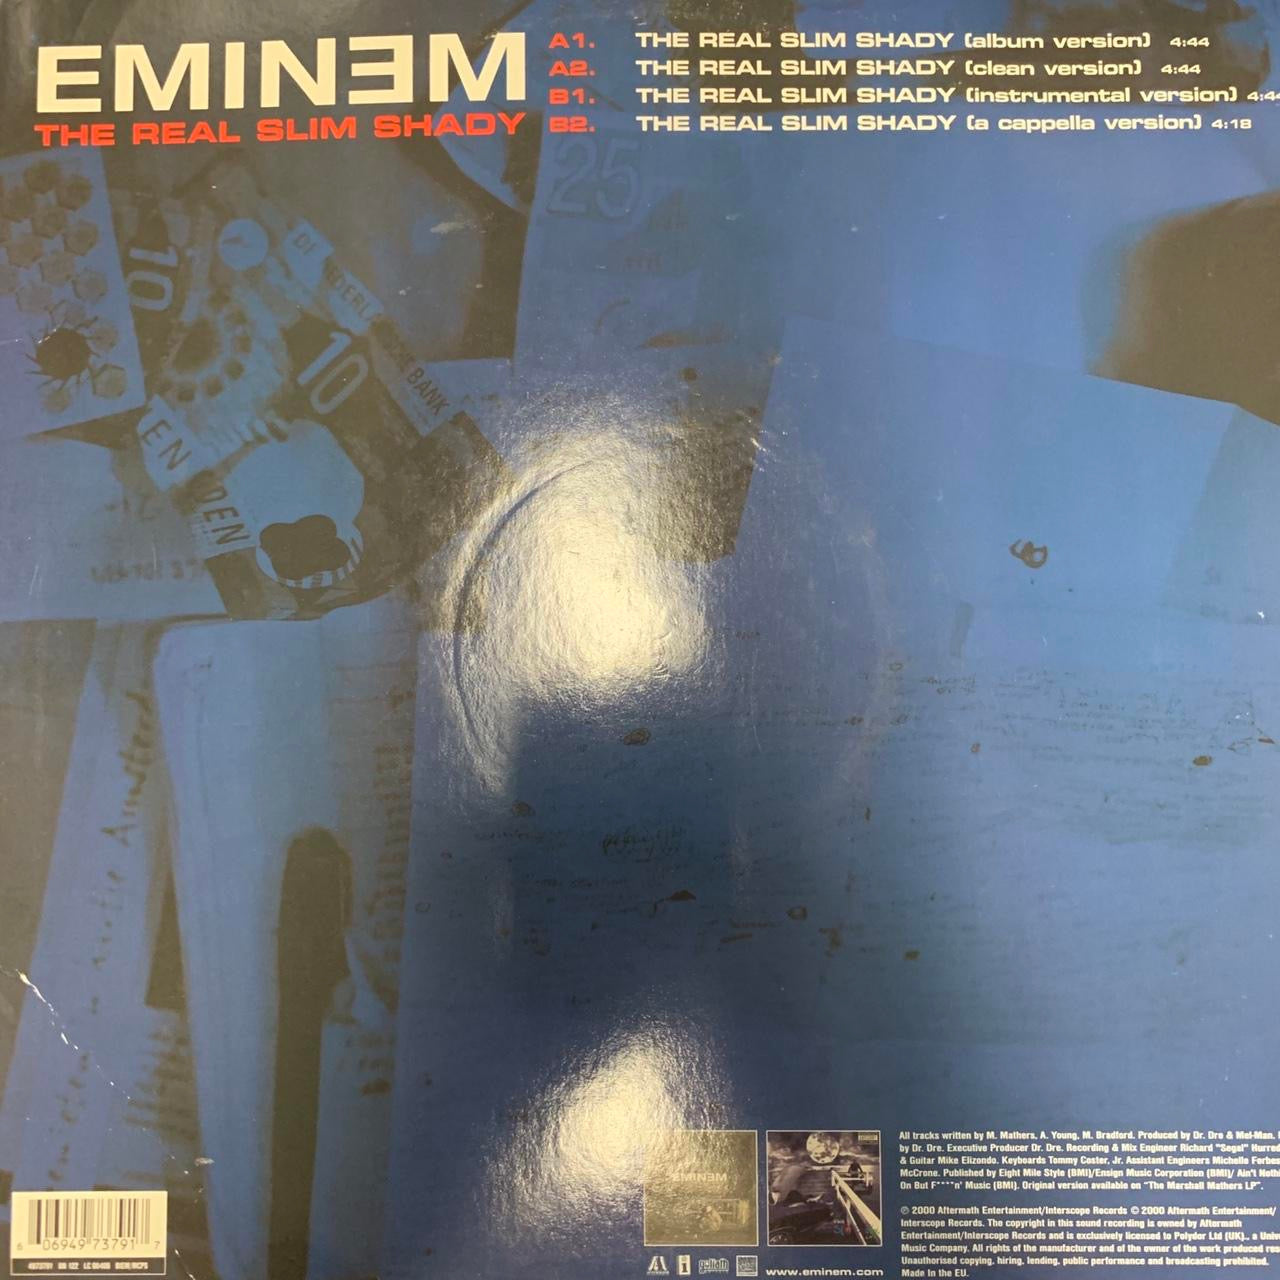 Eminem “The Real Slim Shady” 4 Track 12inch Vinyl Single